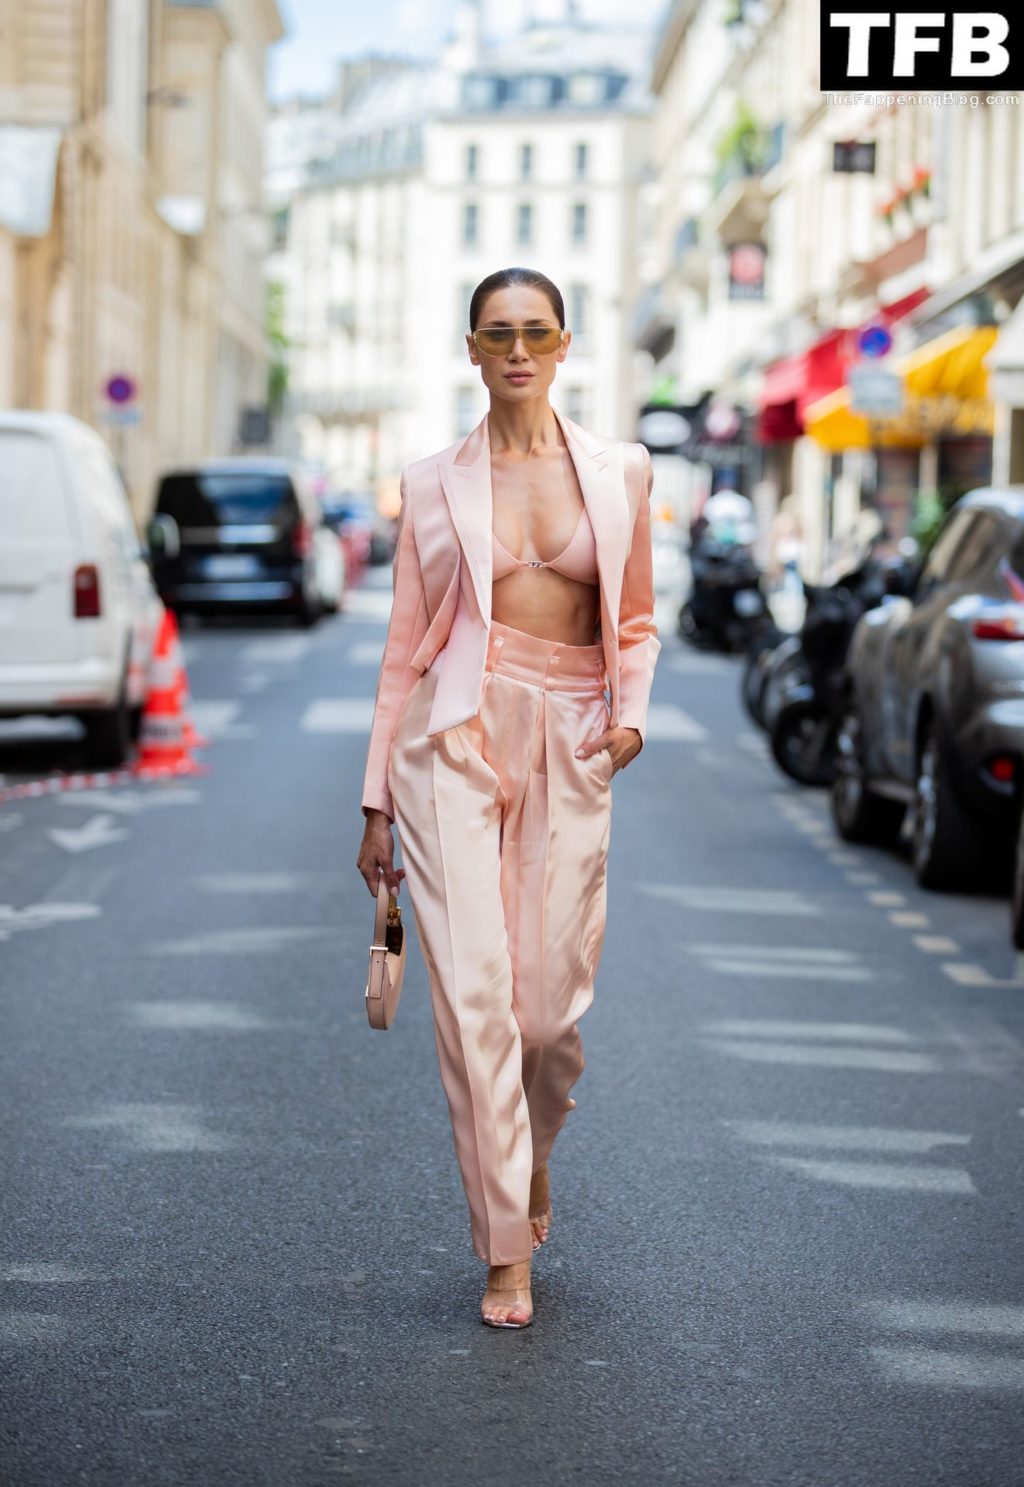 Sabina Jakubowicz Looks Stunning in Paris (16 Photos)